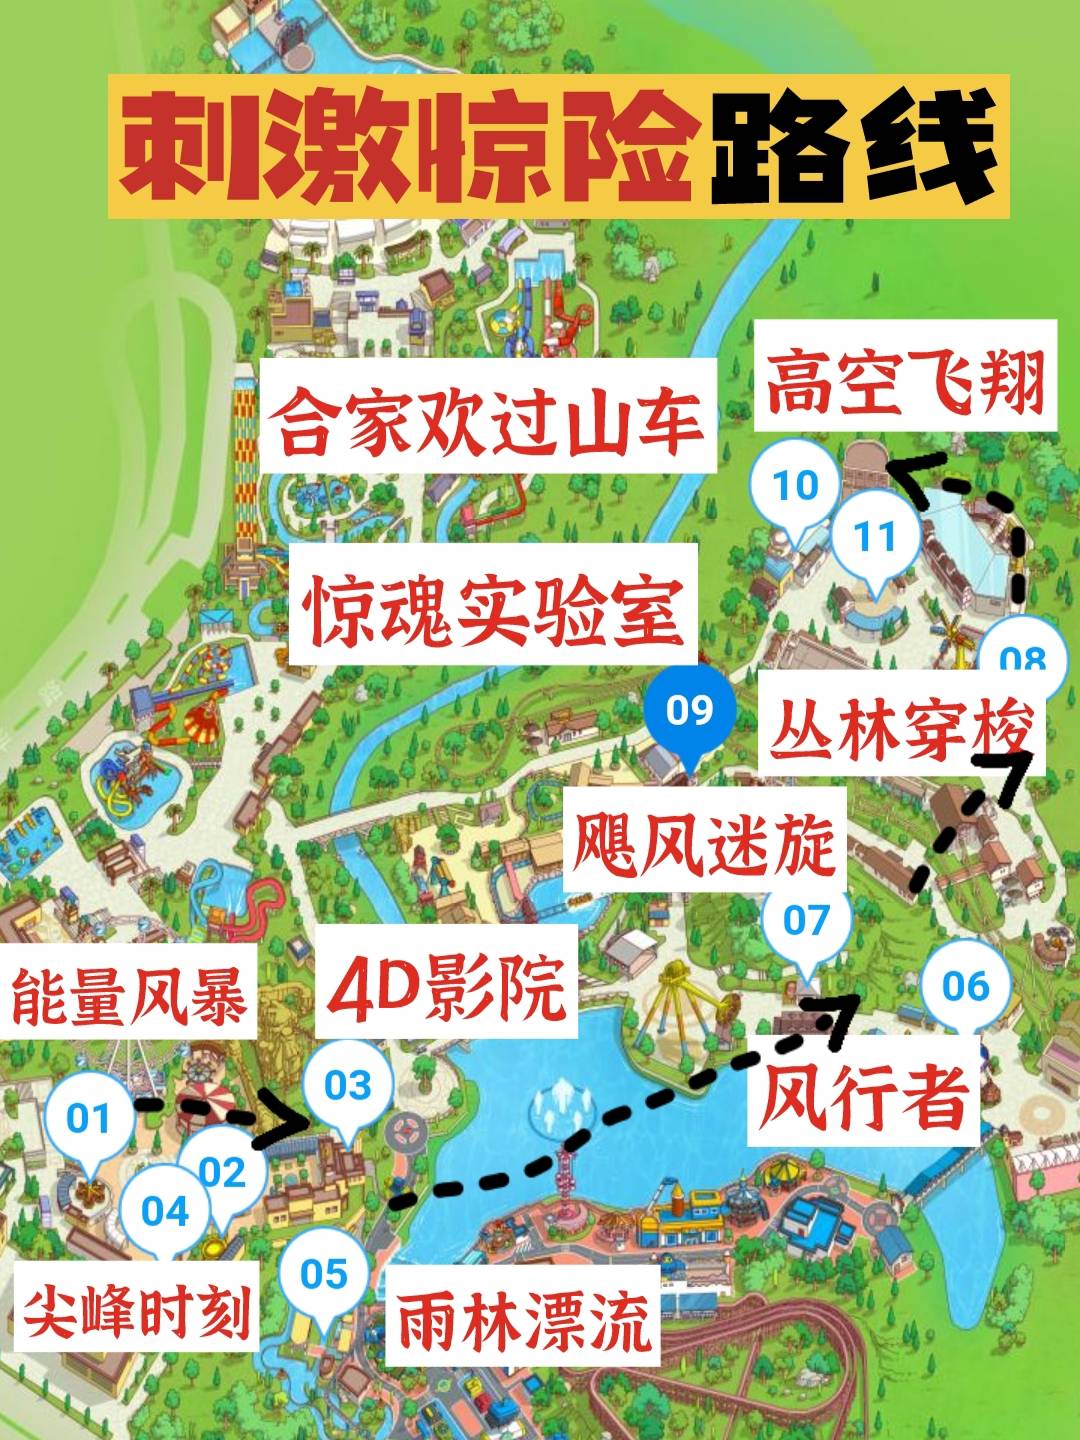 重庆欢乐谷导游图片